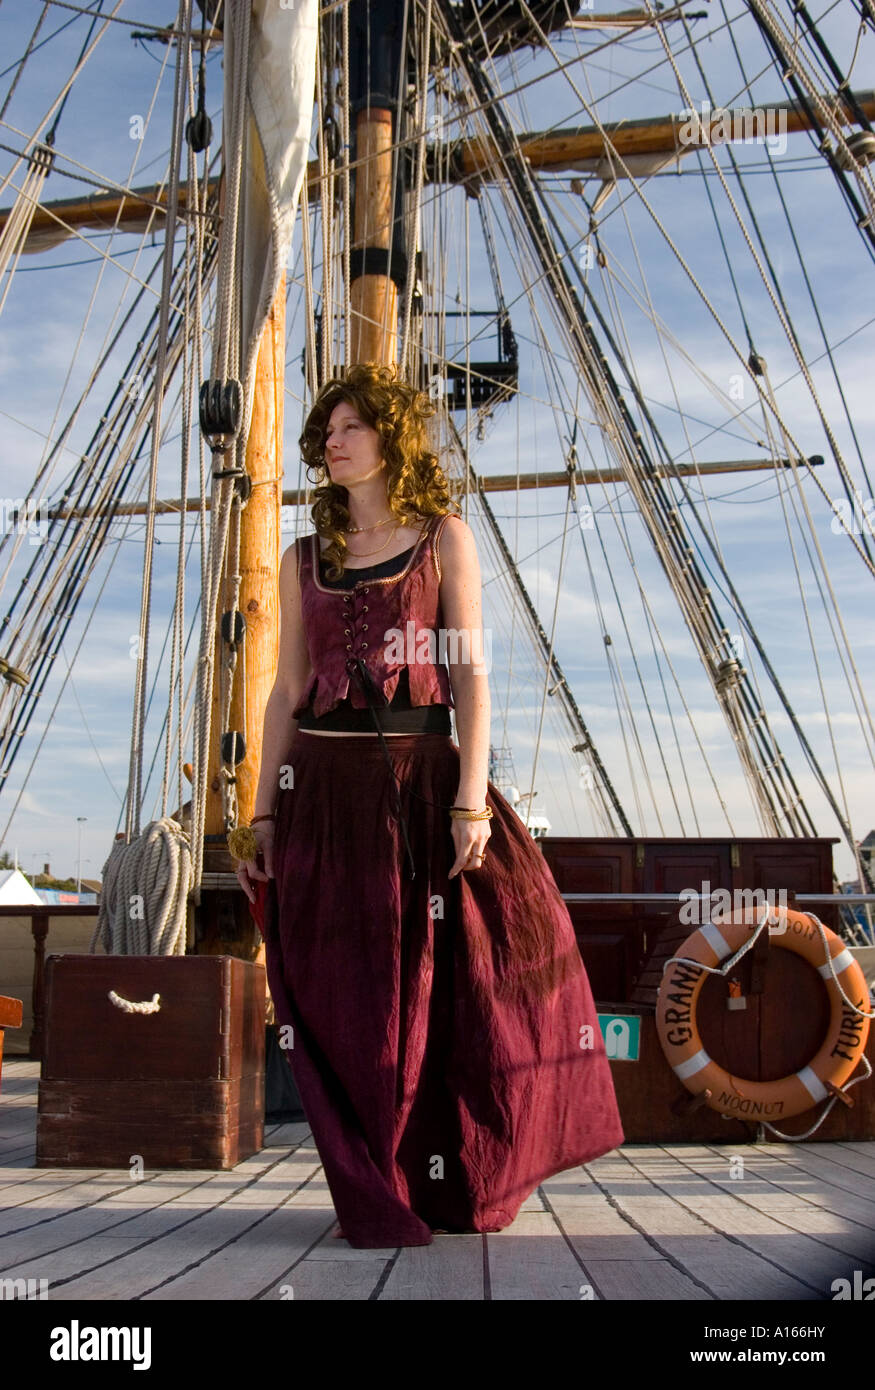 En costume d'actrice pose des promenades sur le pont du navire à voile du 18ème siècle Grand Turk. Banque D'Images